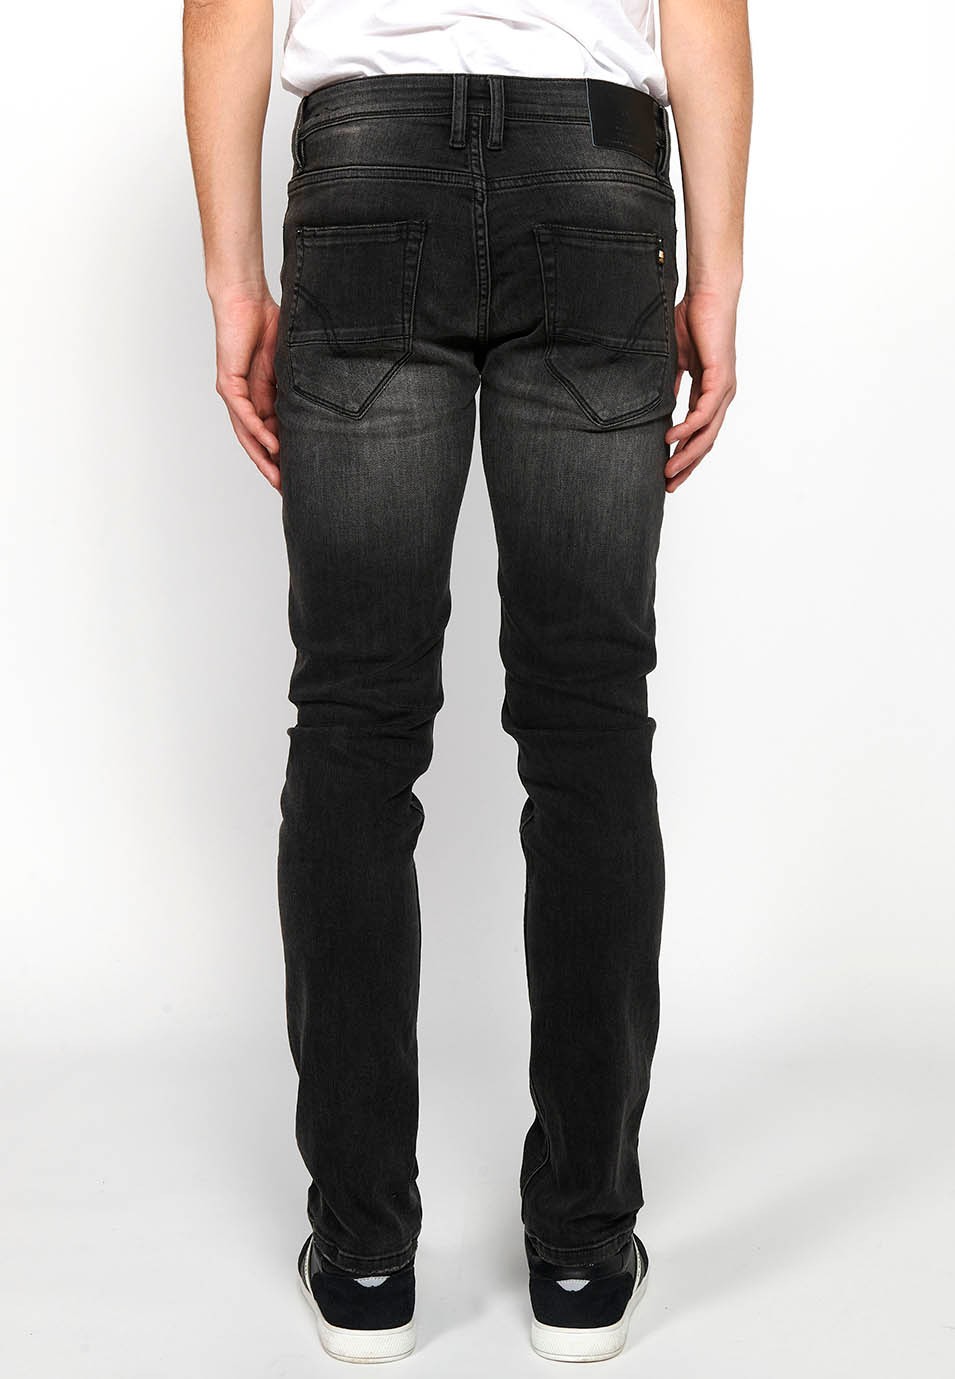 Pantalón jeans largo straigth regular fit con Cierre delantero con cremallera y botón de Color Denim Negro para Hombre 2